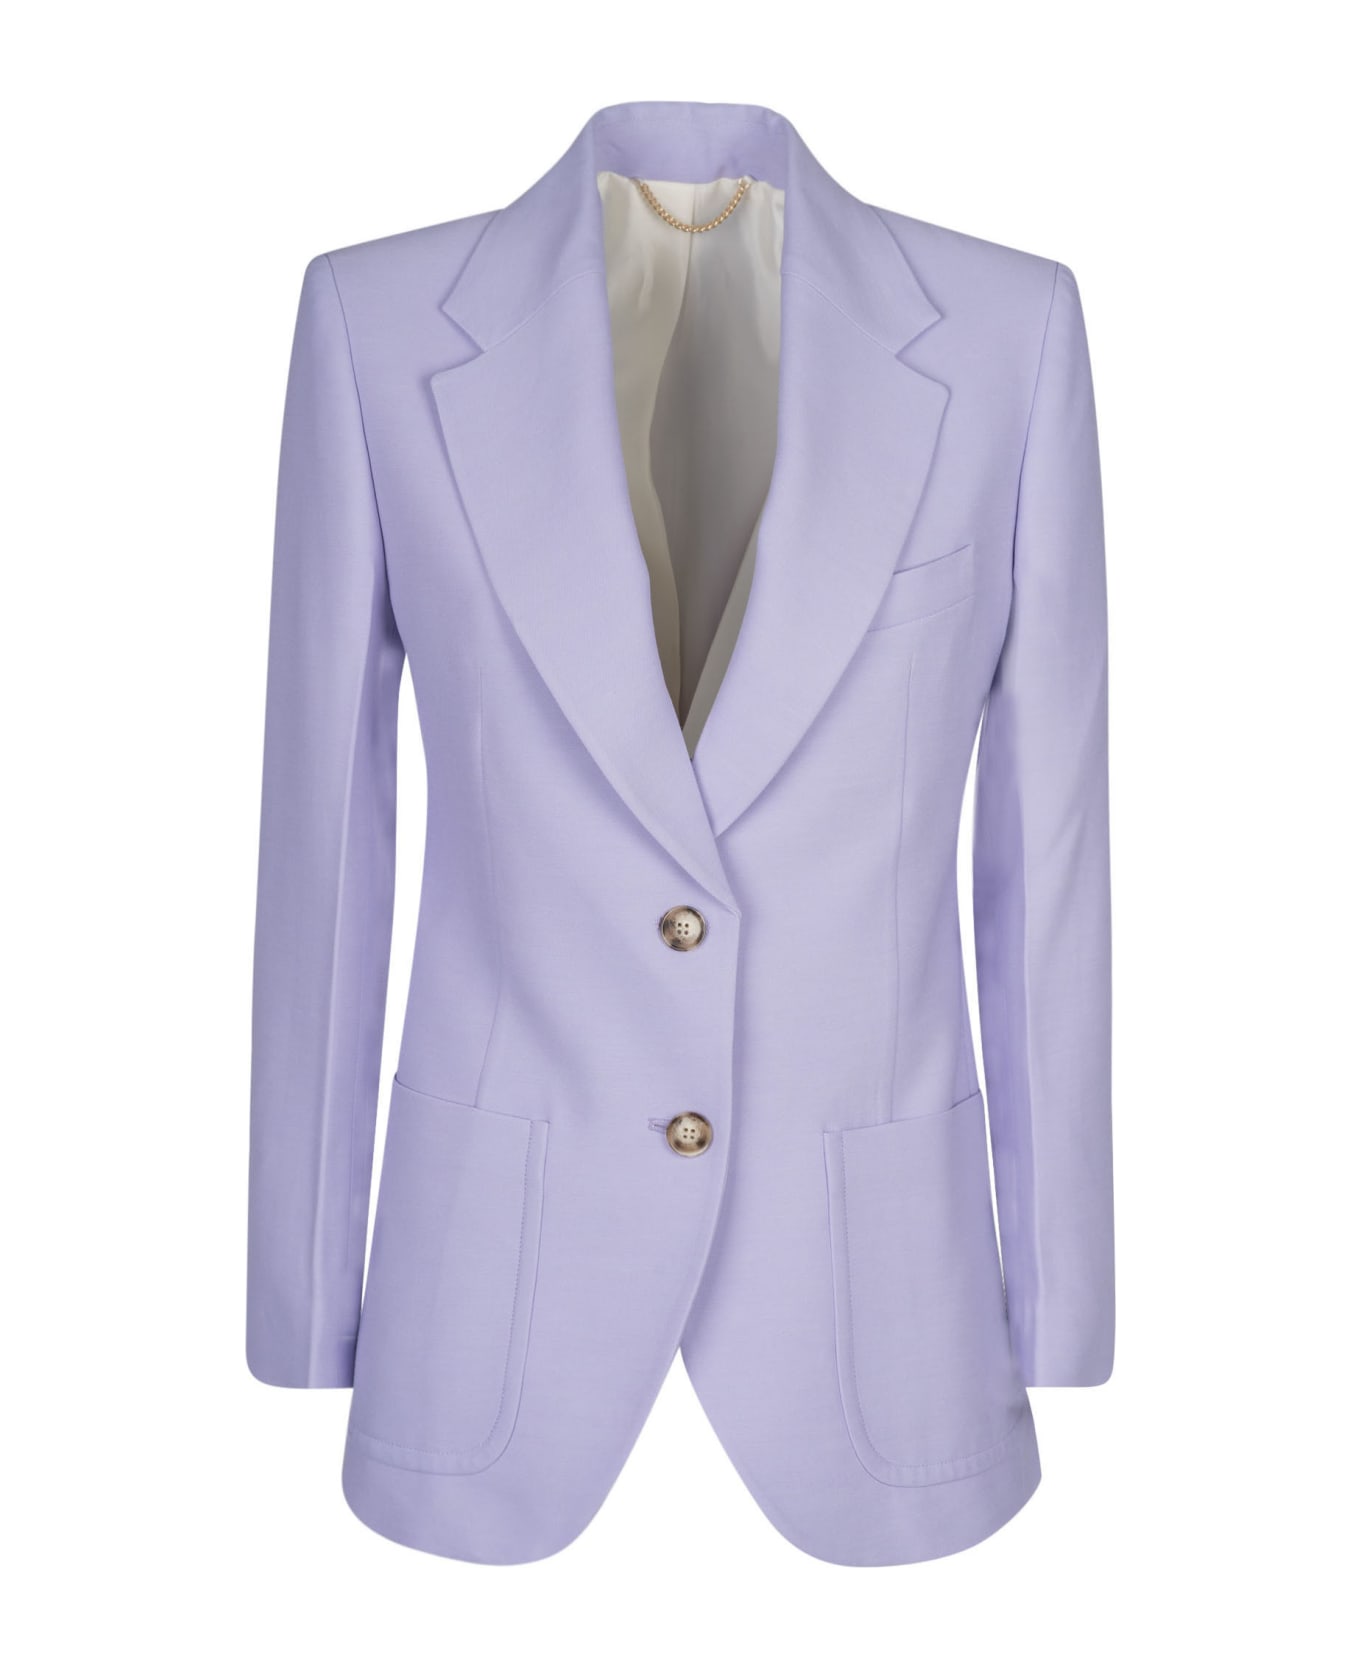 Victoria Beckham Two-button Blazer - Lavender